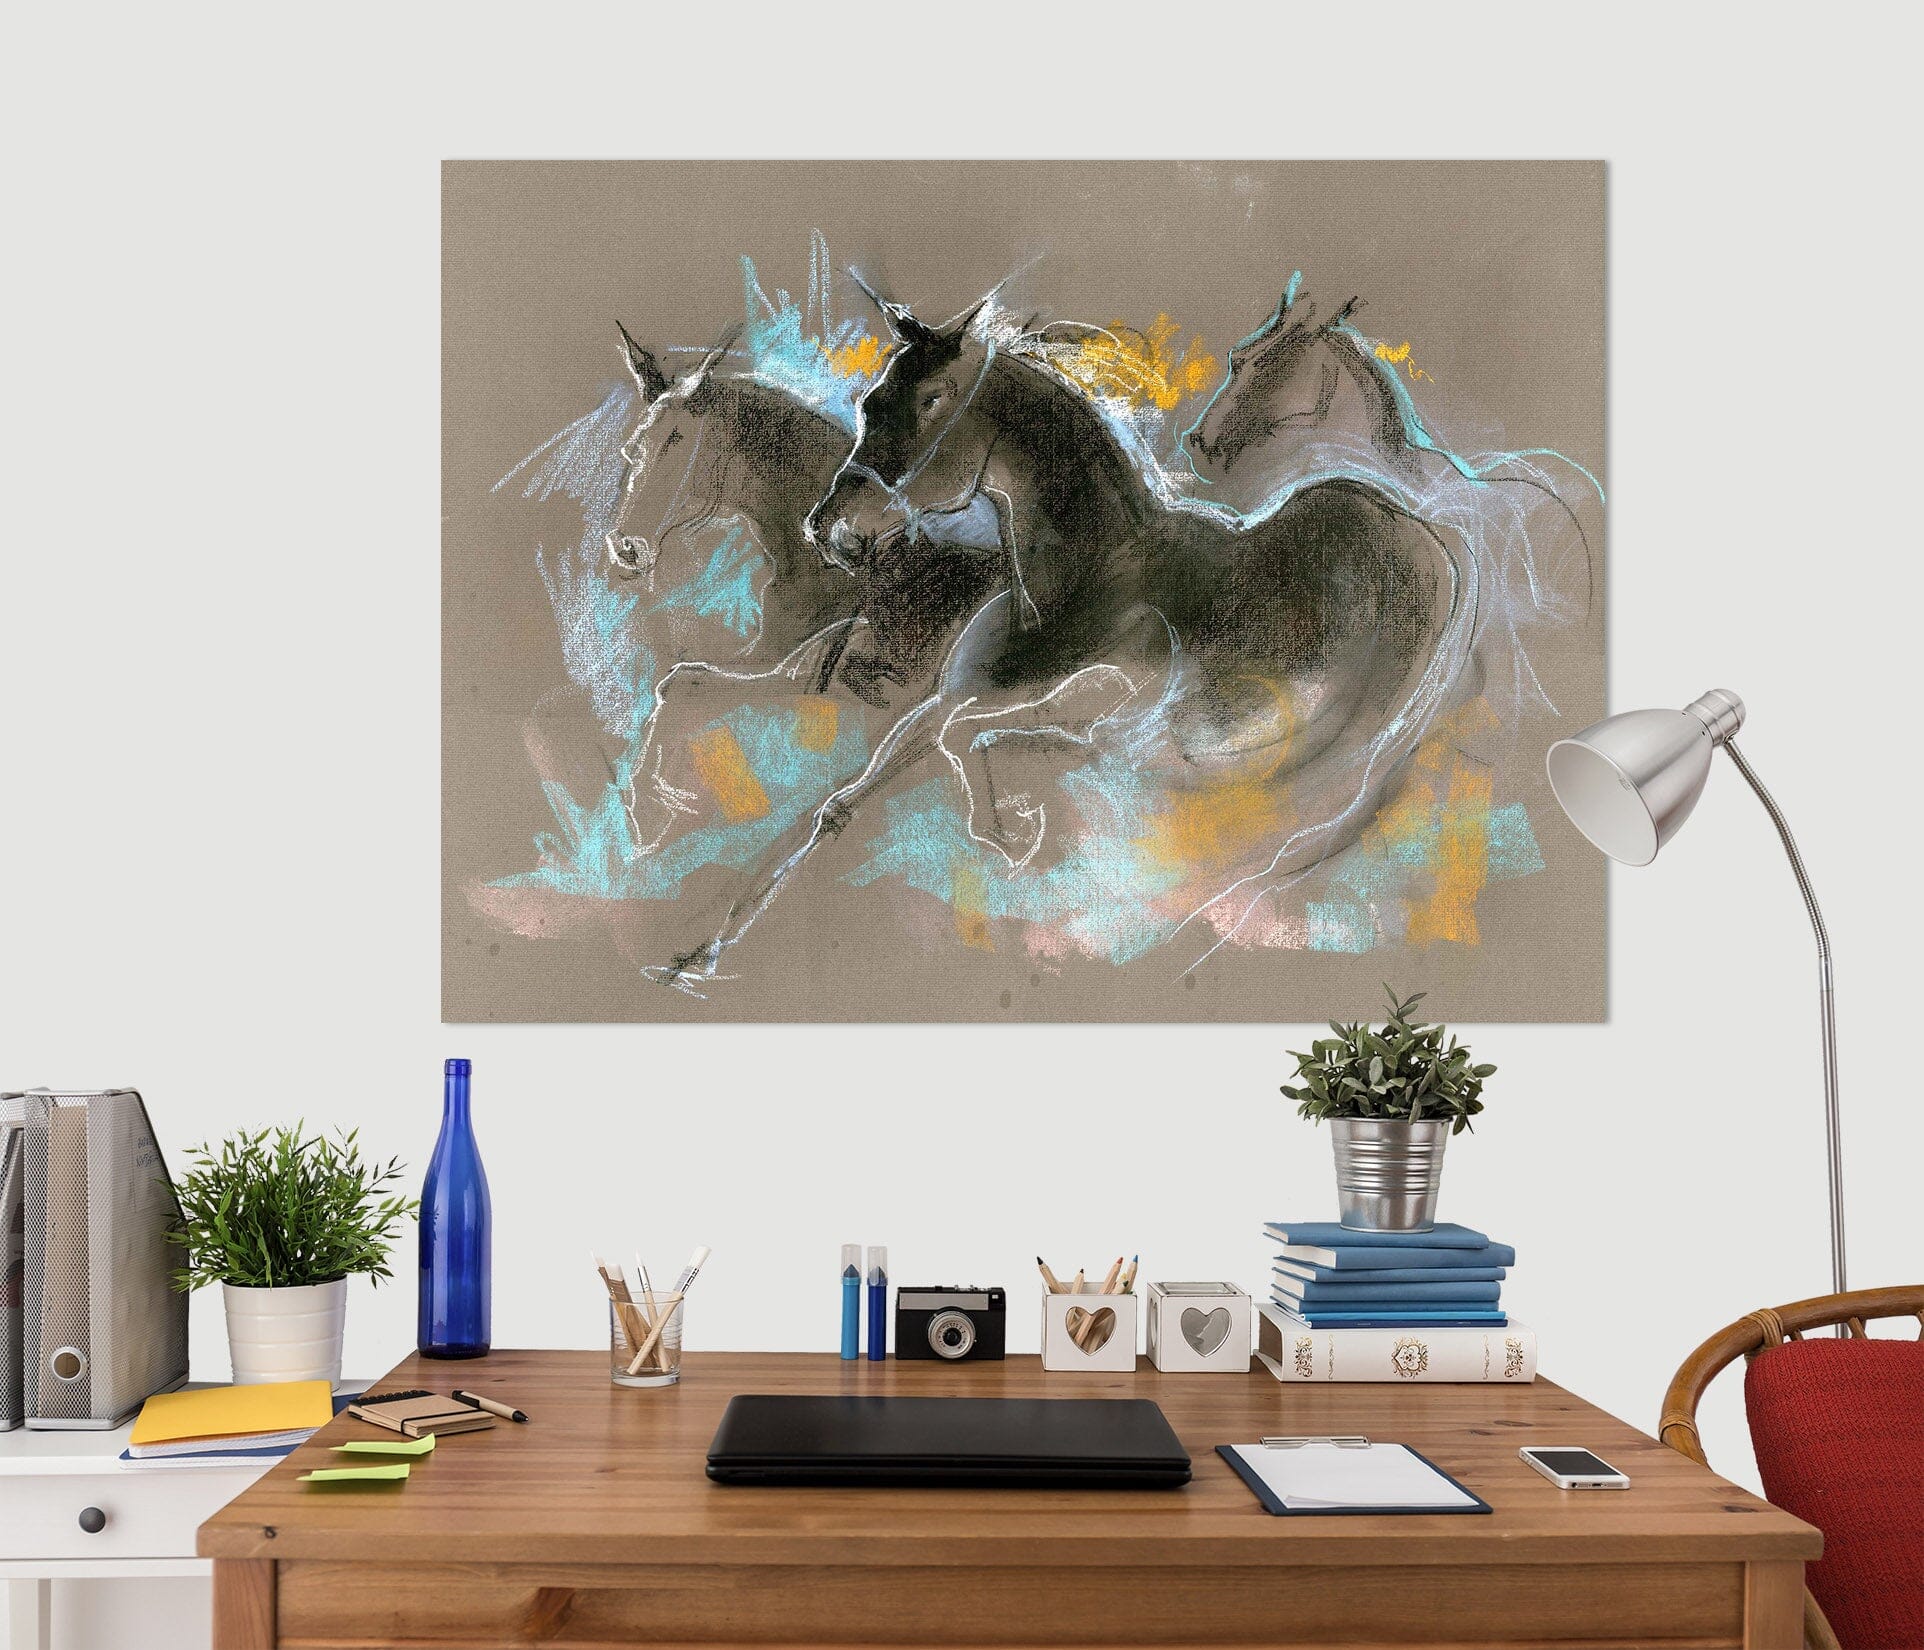 3D Running Horse 014 Anne Farrall Doyle Wall Sticker Wallpaper AJ Wallpaper 2 